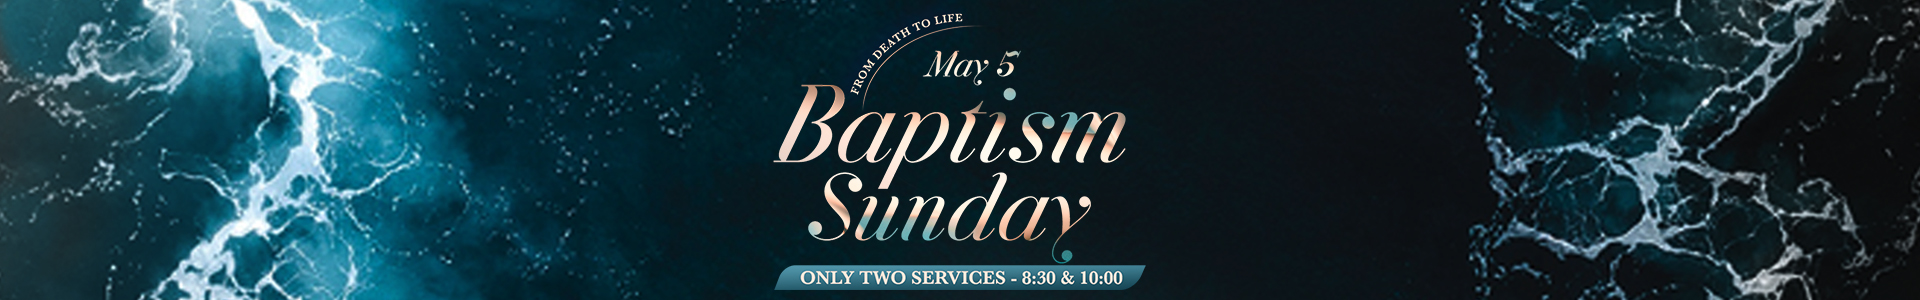 baptism-sunday-website-banner-copy